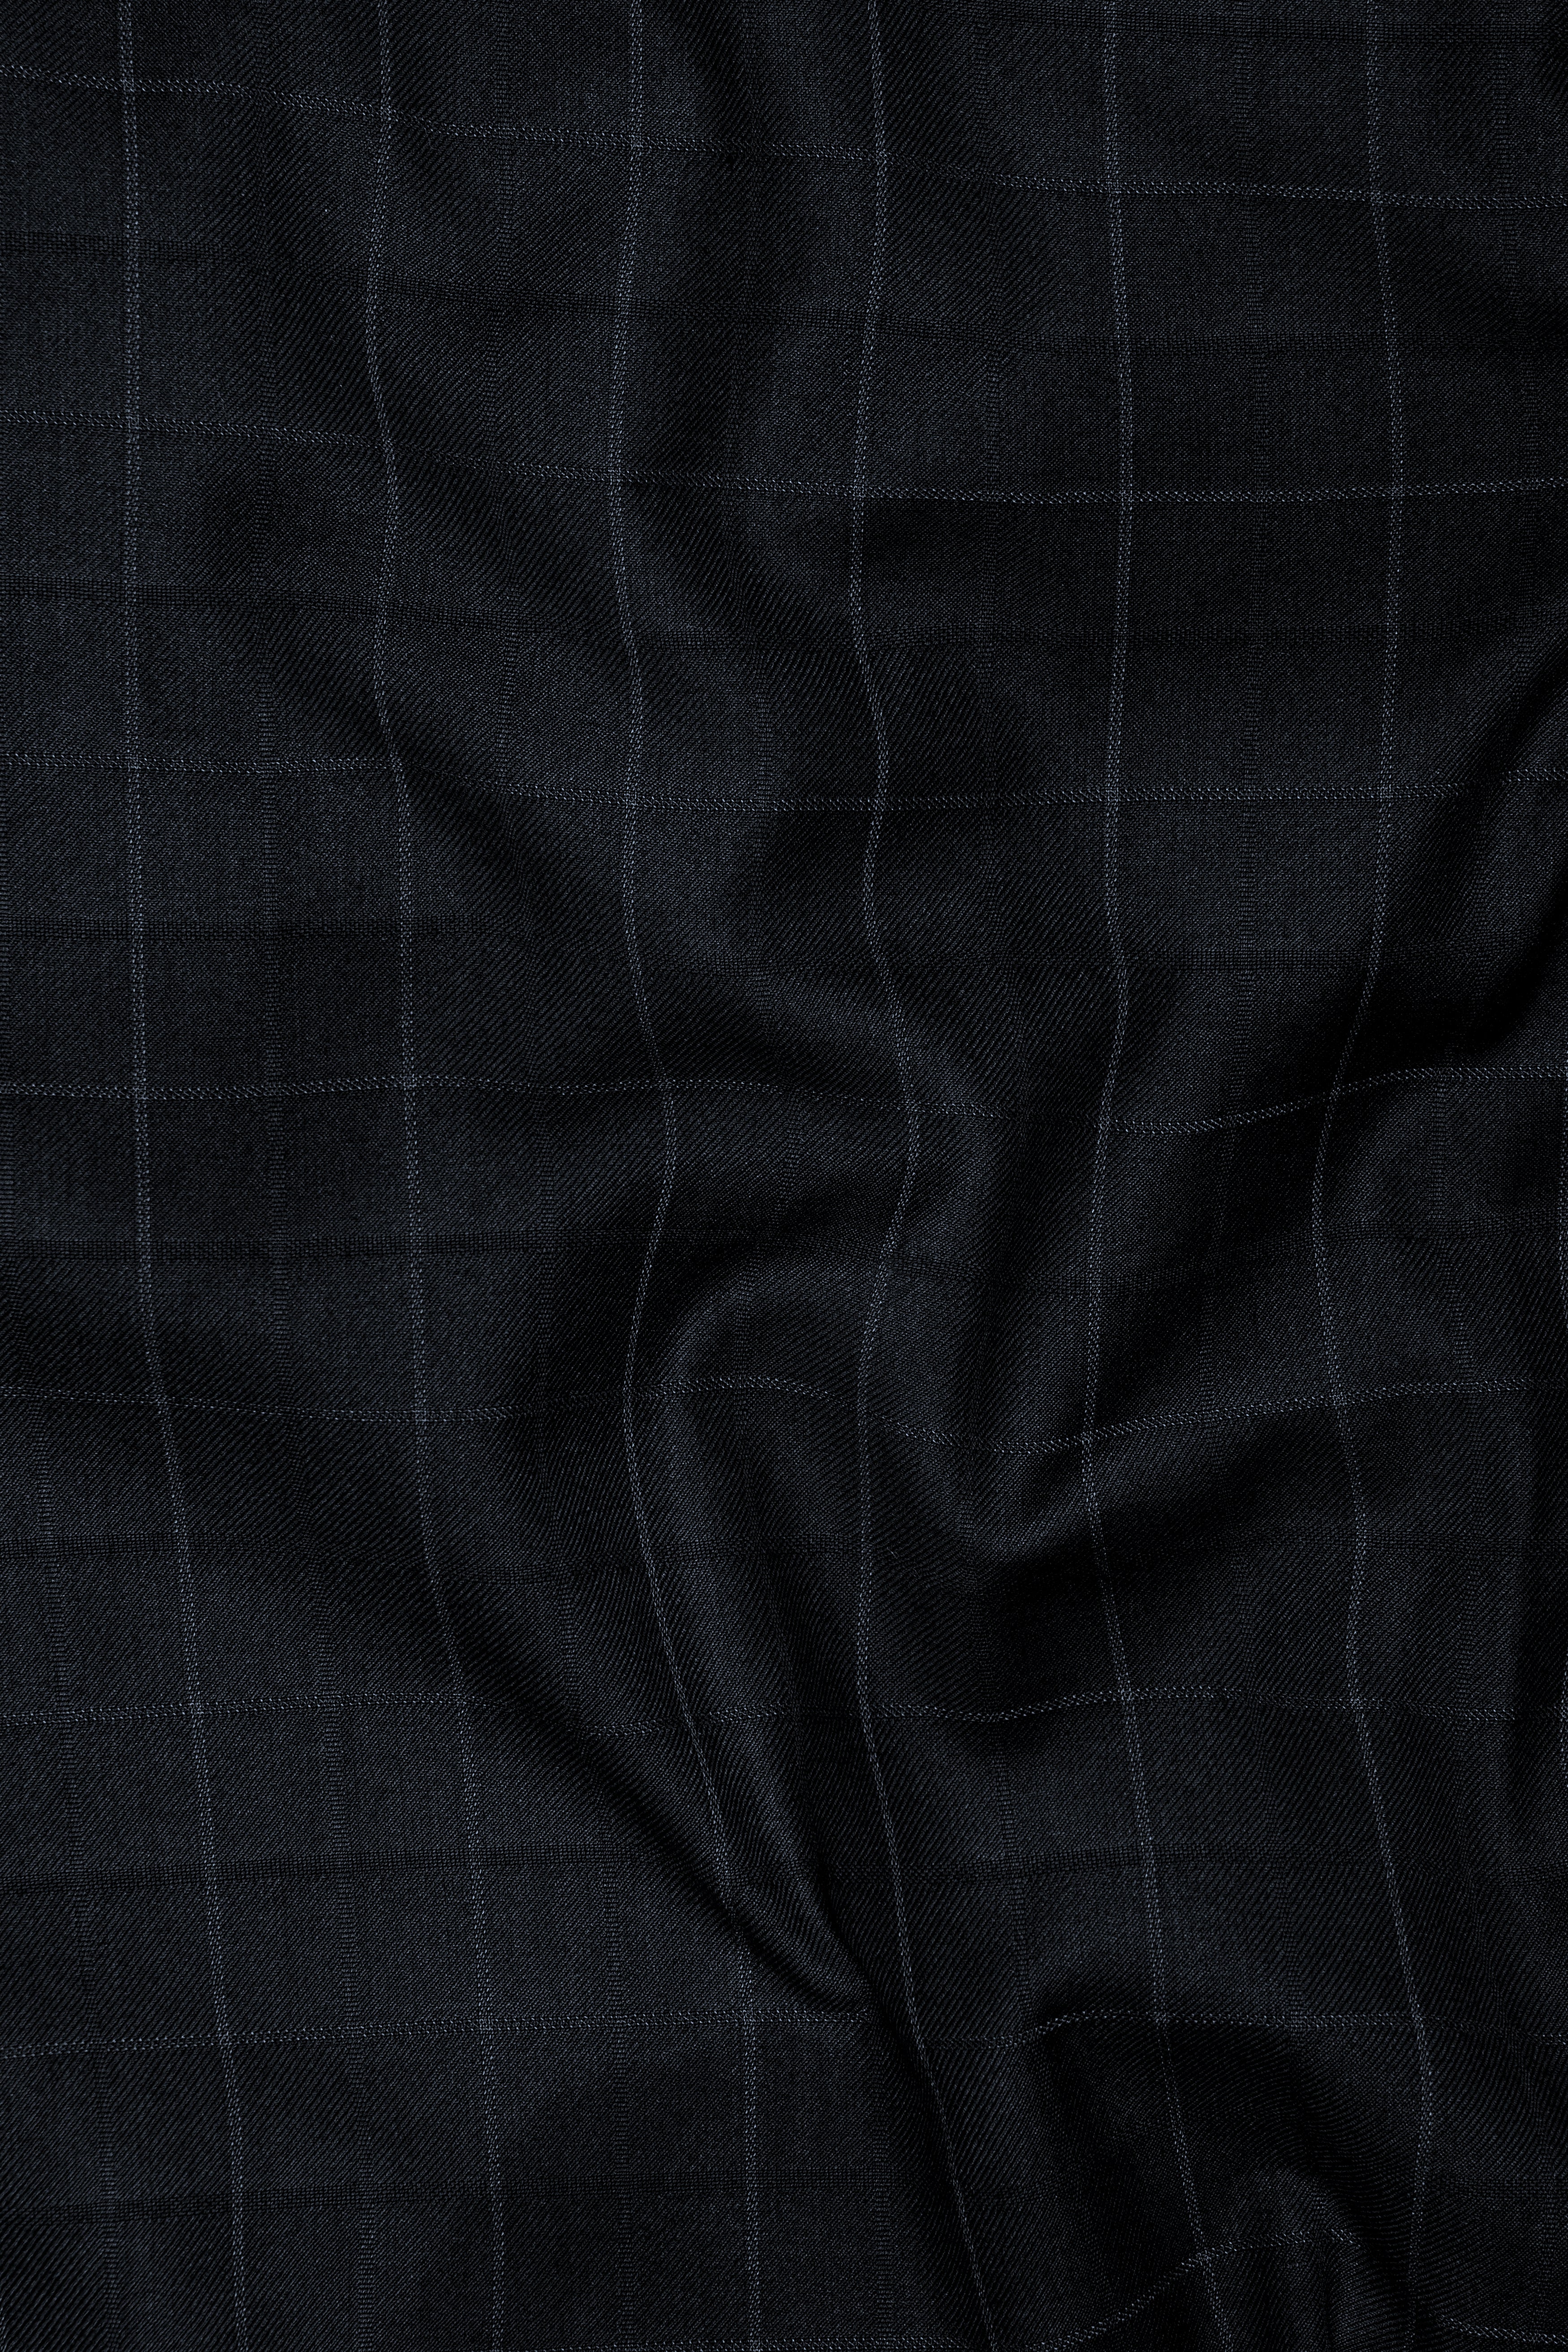 Jade Black Subtle Checkered Wool Rich Waistcoat V2909-36, V2909-38, V2909-40, V2909-42, V2909-44, V2909-46, V2909-48, V2909-50, V2909-09, V2909-54, V2909-56, V2909-58, V2909-60